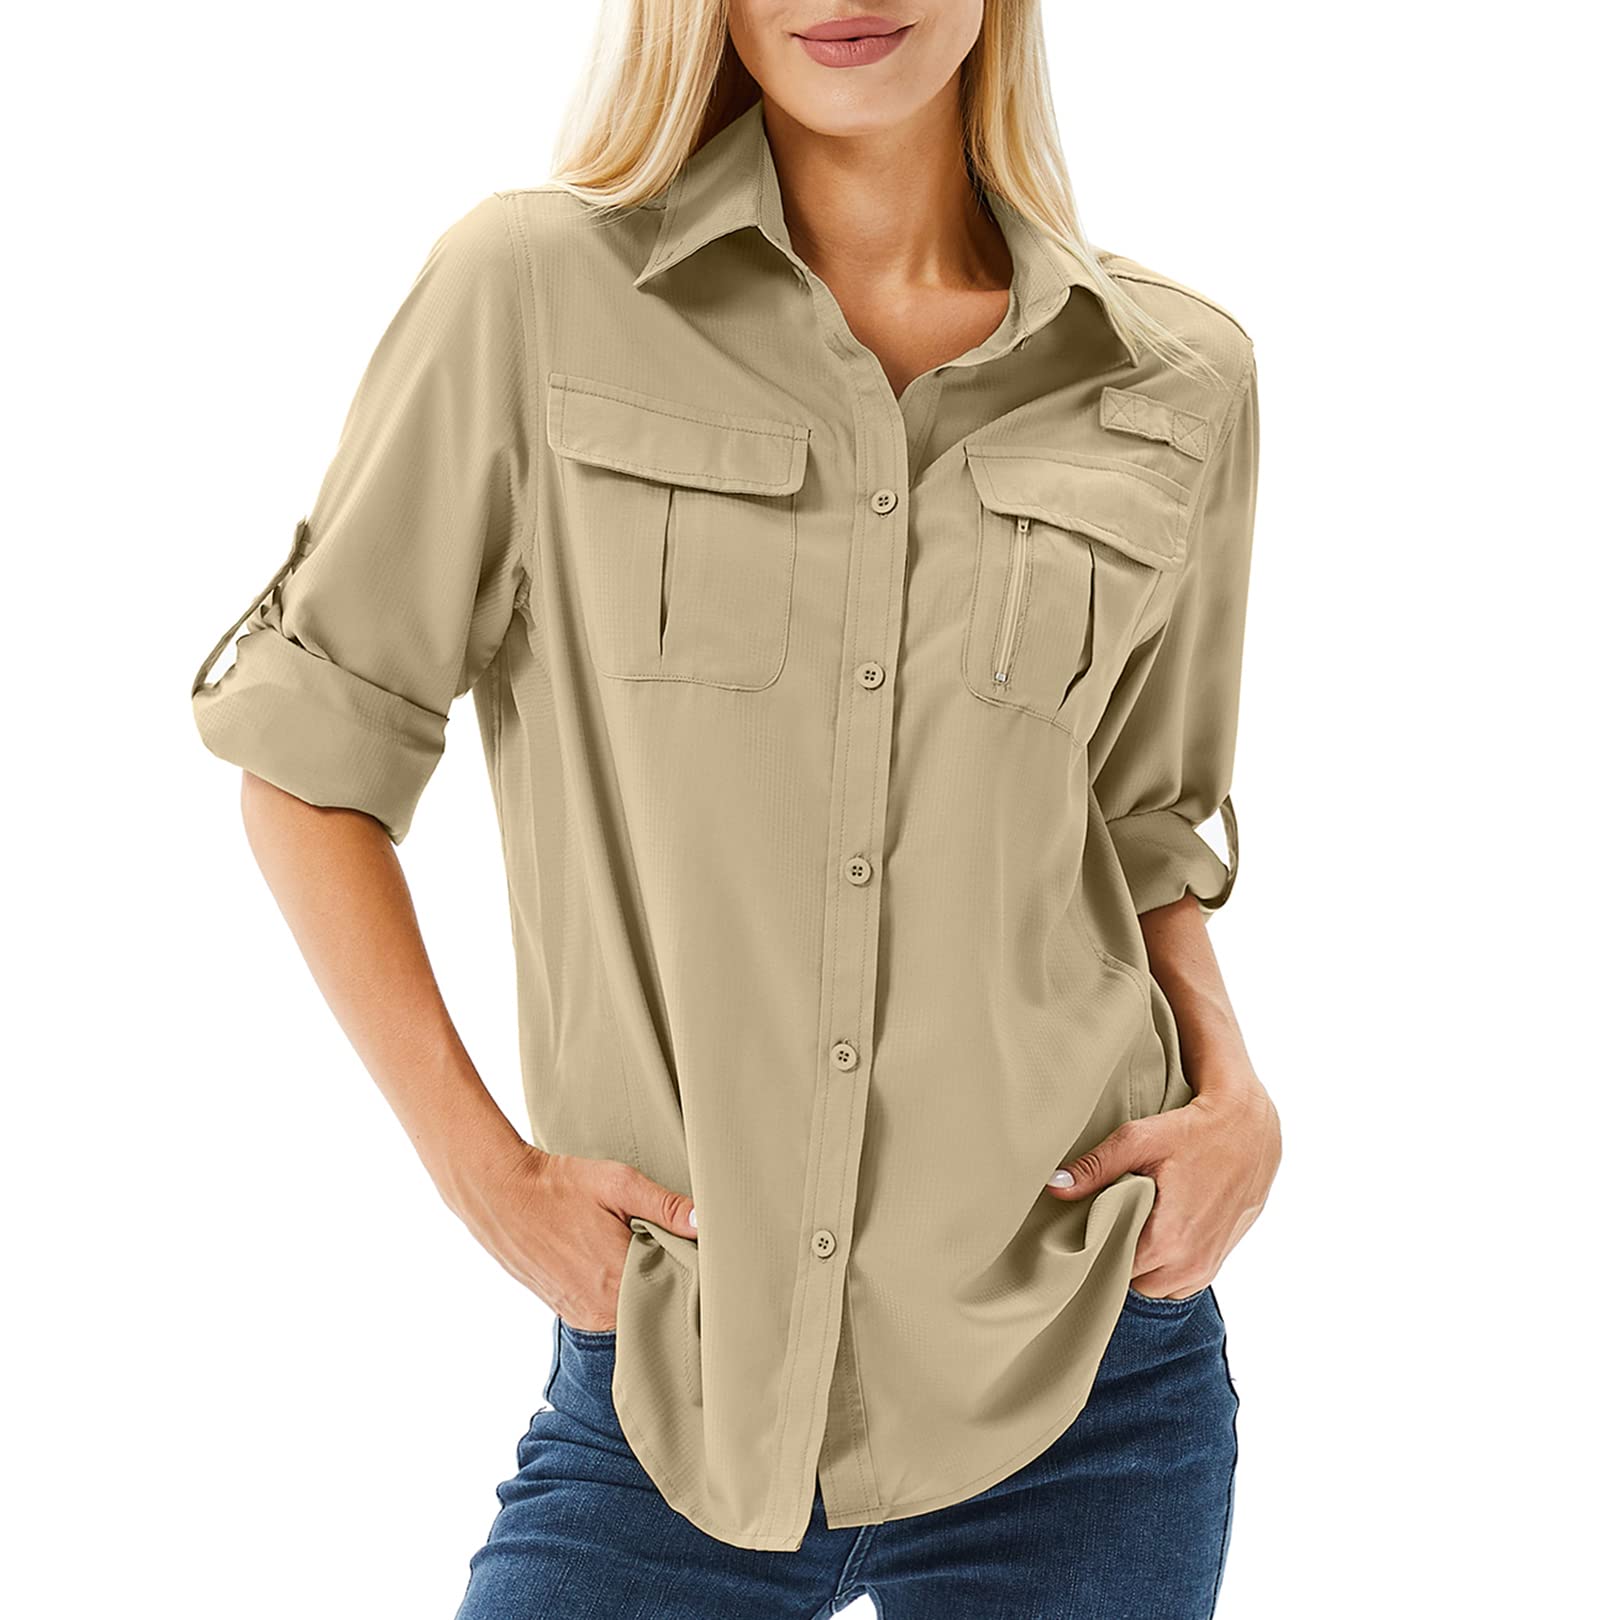 Toumett Women's UPF 50 Long Sleeve UV Sun Protection Safari Shirts Outdoor  Quick Dry Fishing Hiking Travel Shirts Medium Khaki